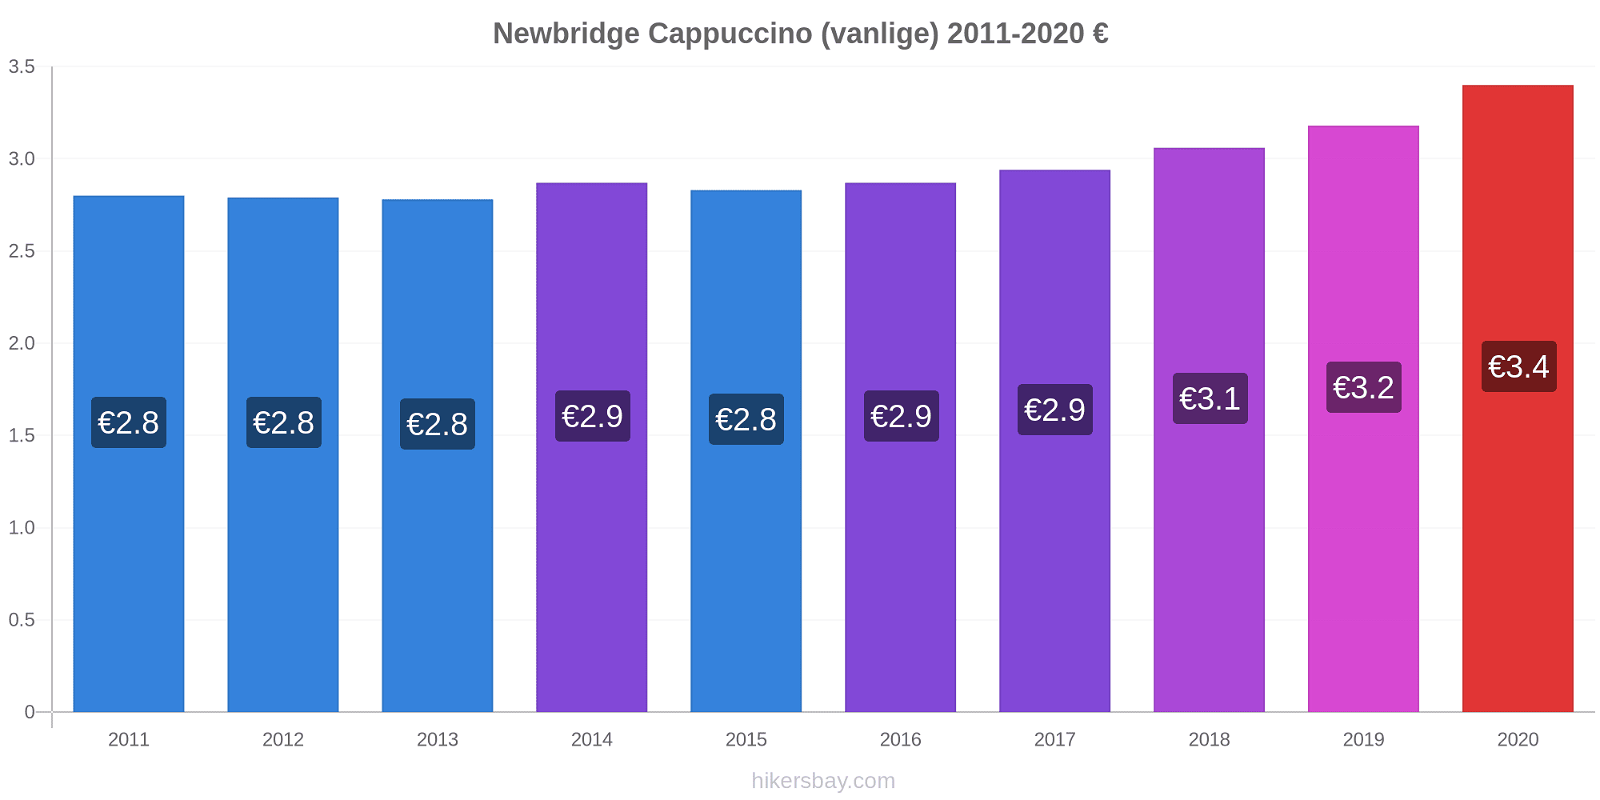 Newbridge prisendringer Cappuccino (vanlige) hikersbay.com